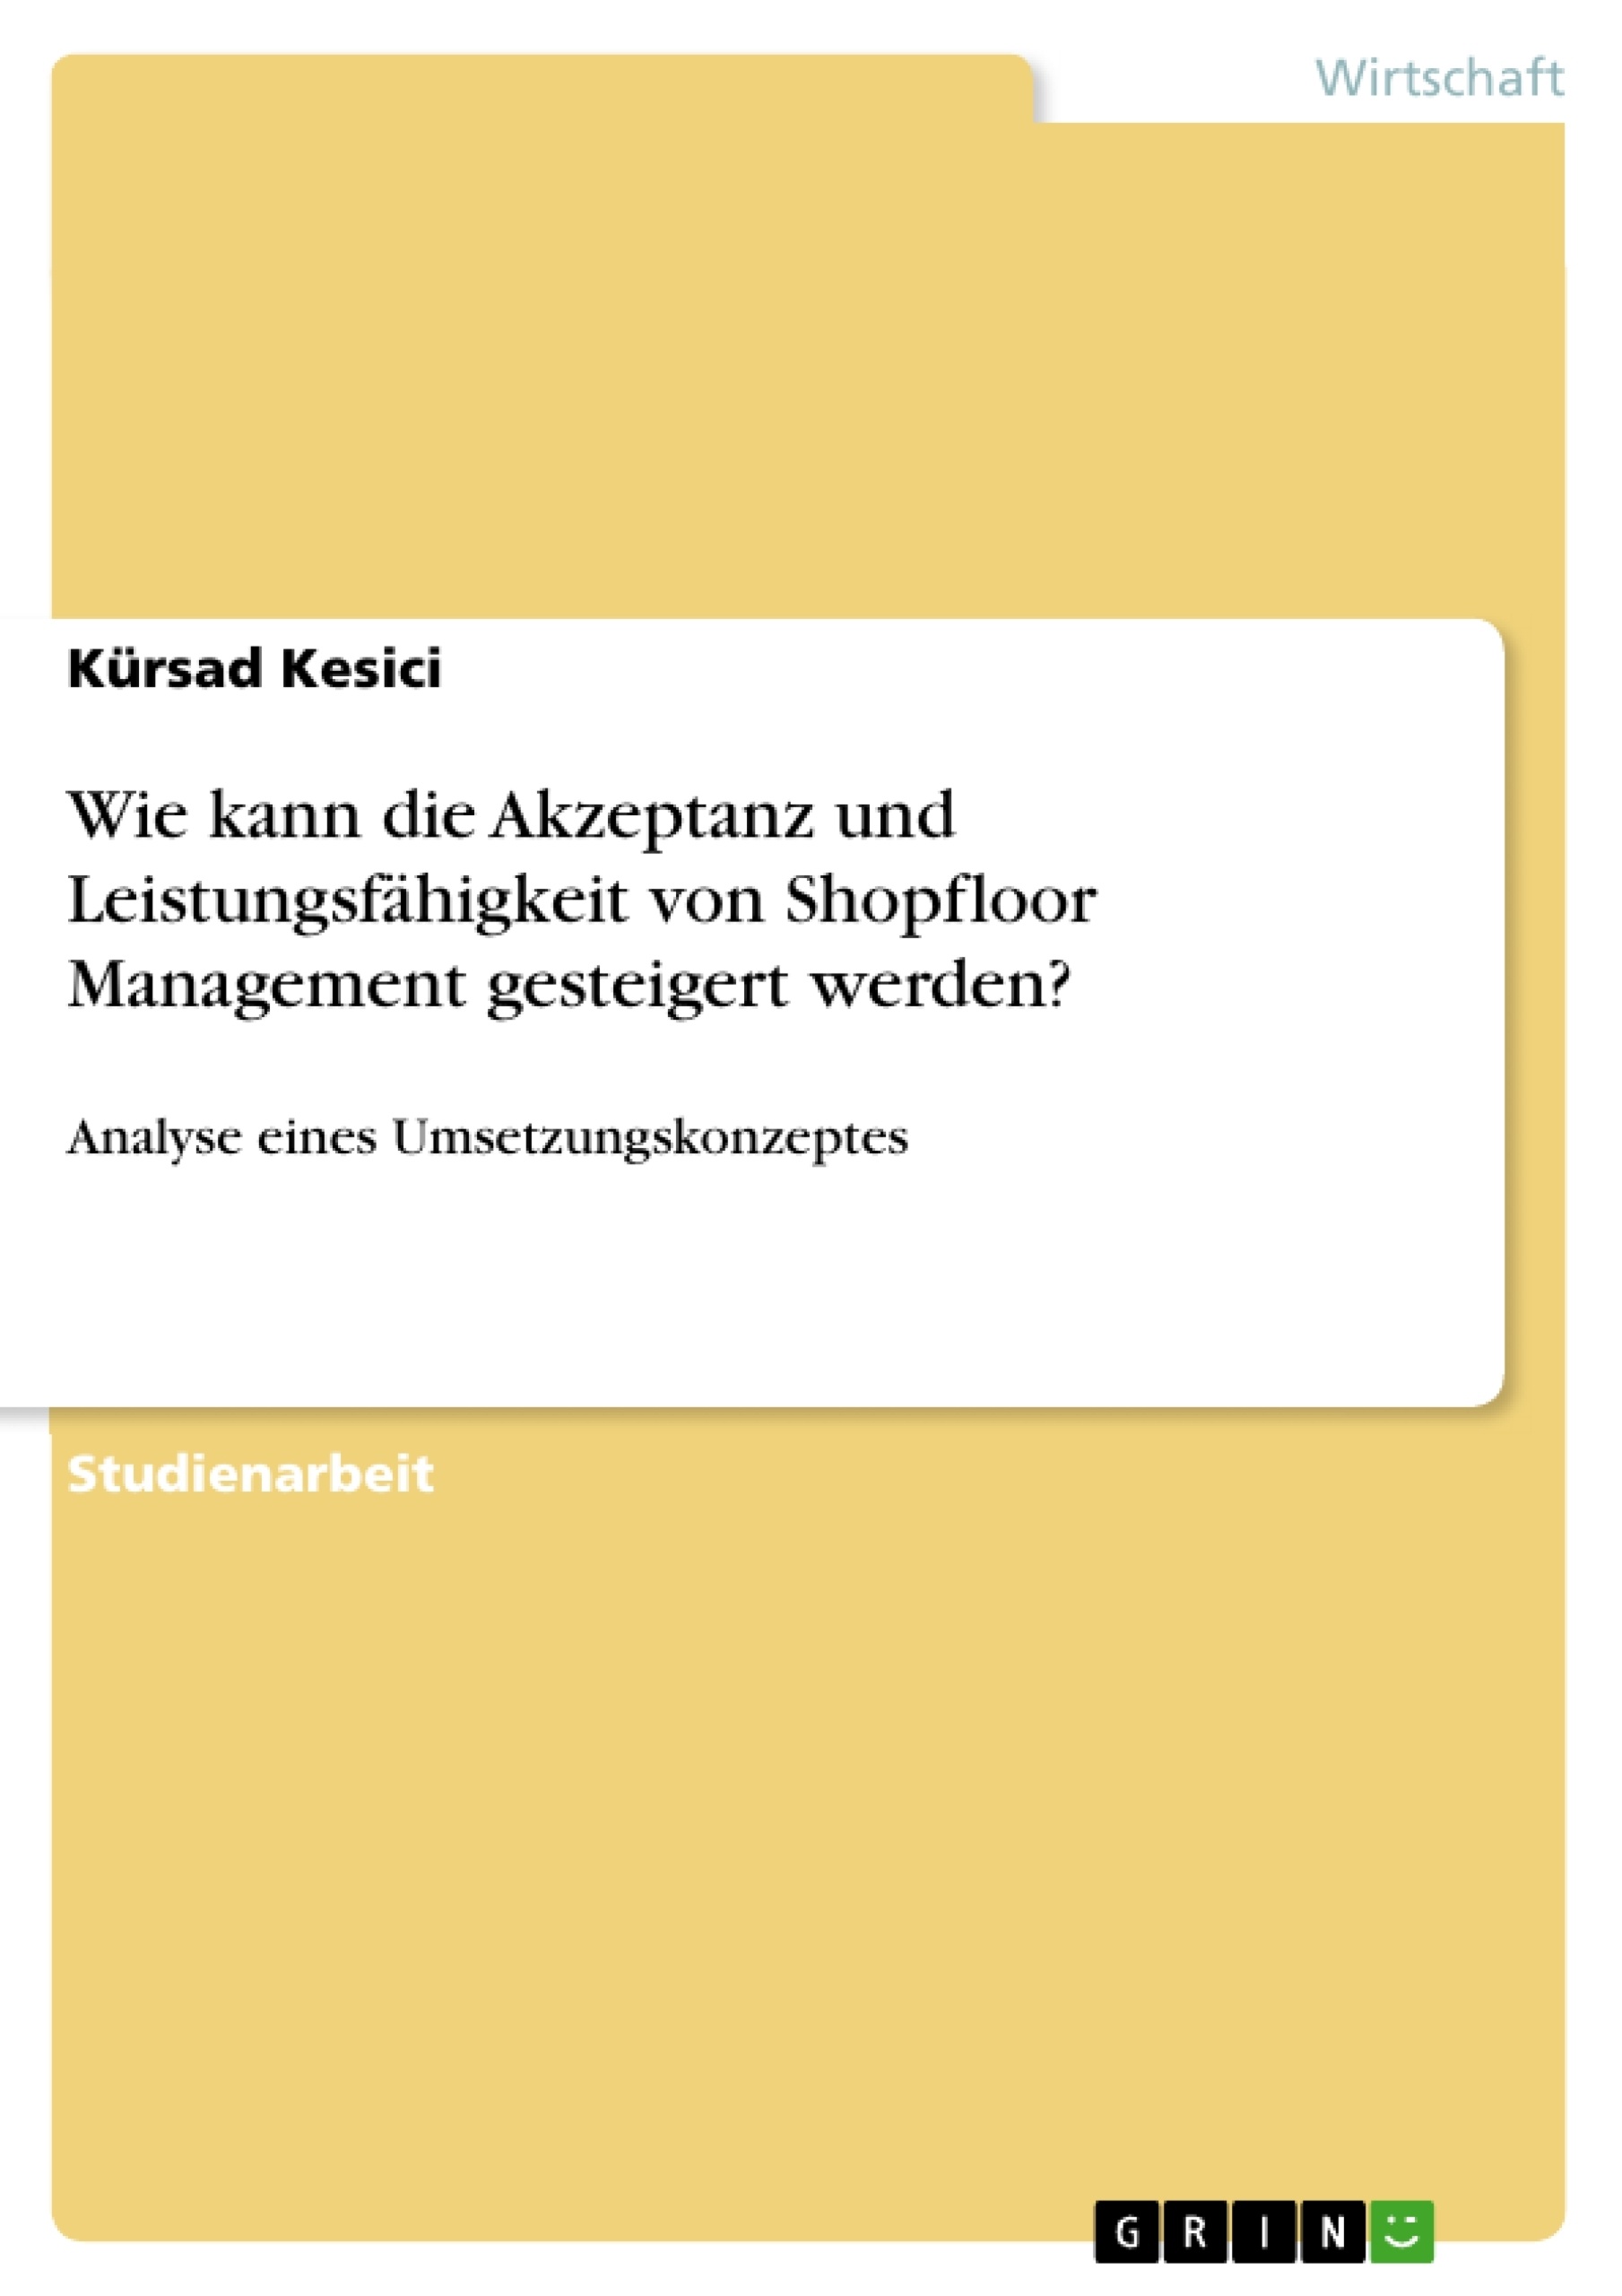 Titel: Wie kann die Akzeptanz und Leistungsfähigkeit von Shopfloor Management gesteigert werden?